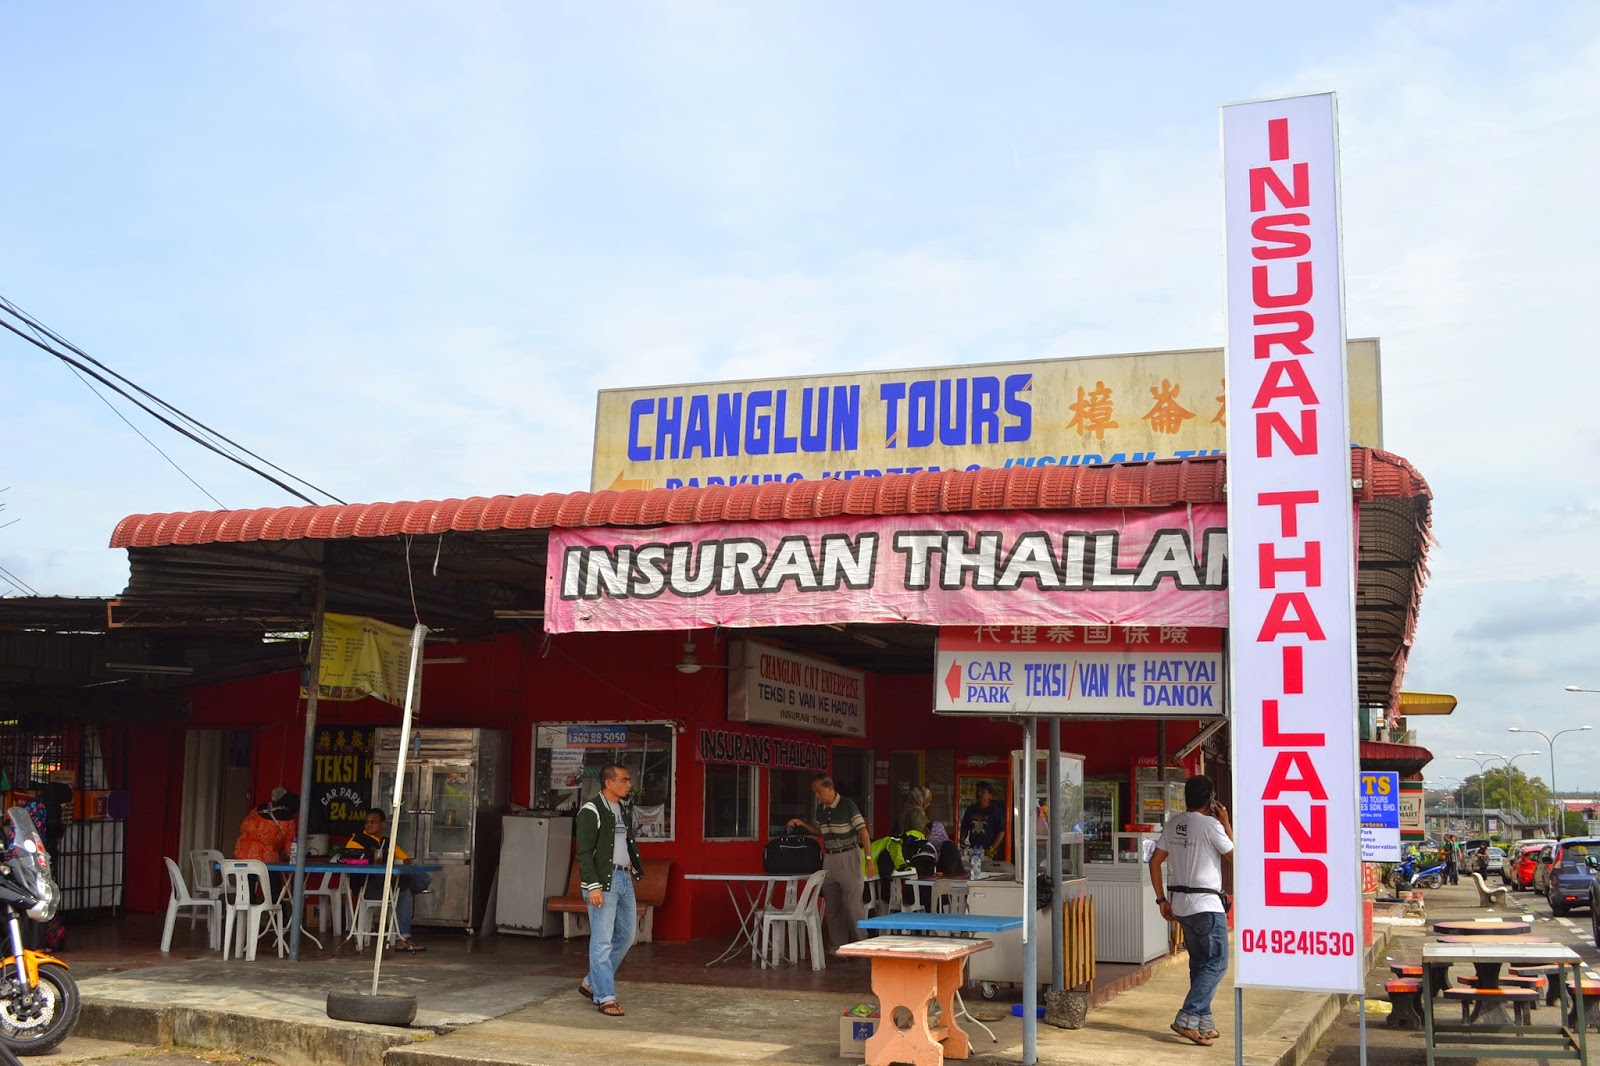 Inurans thailand